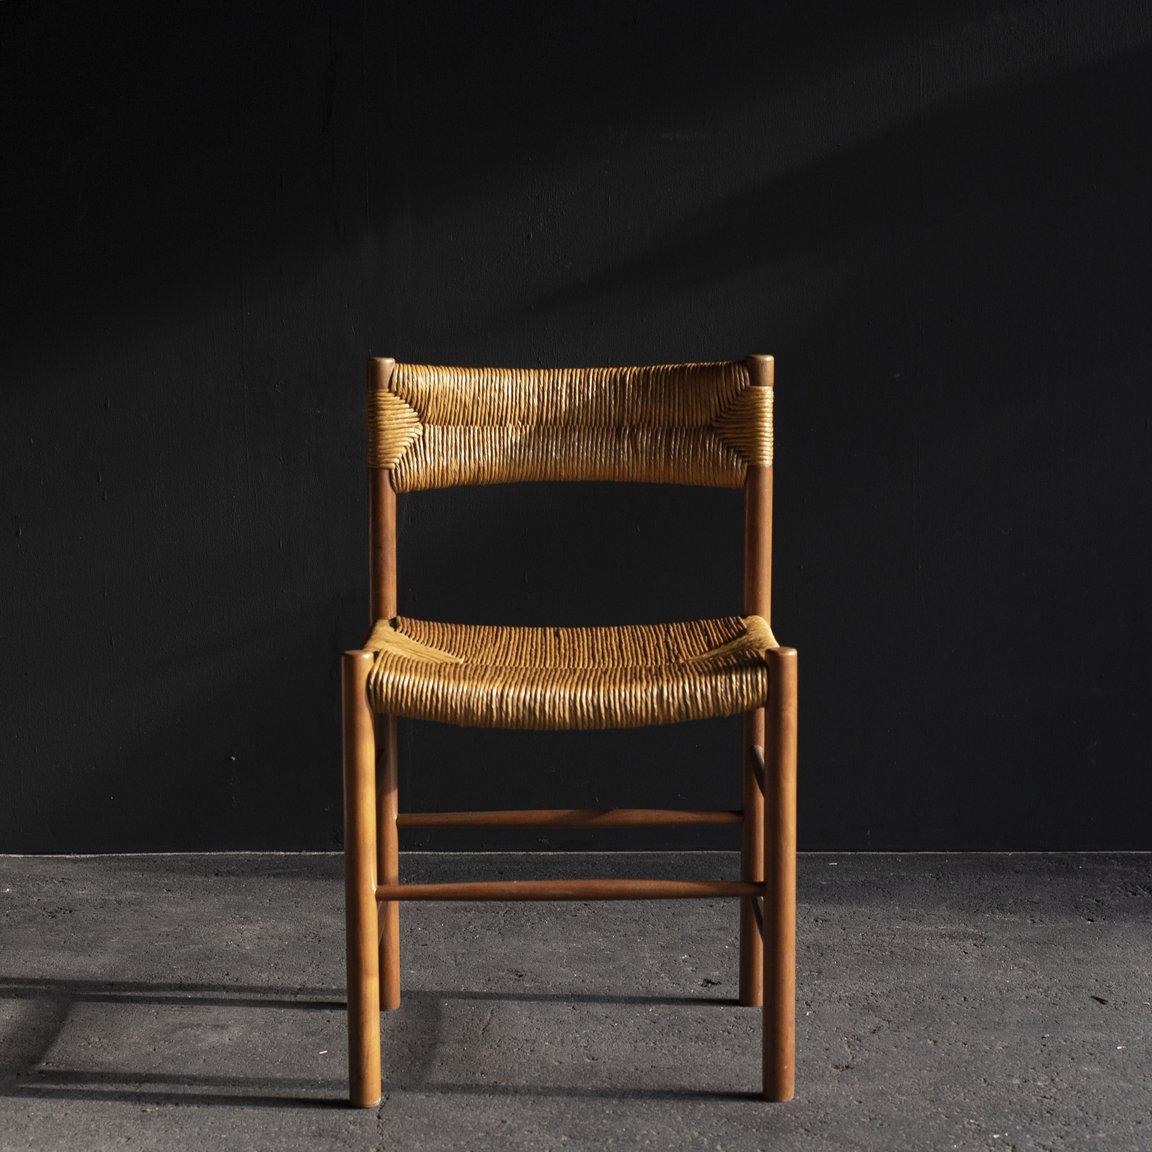 Dordogne Chair by Robert Sentou 1